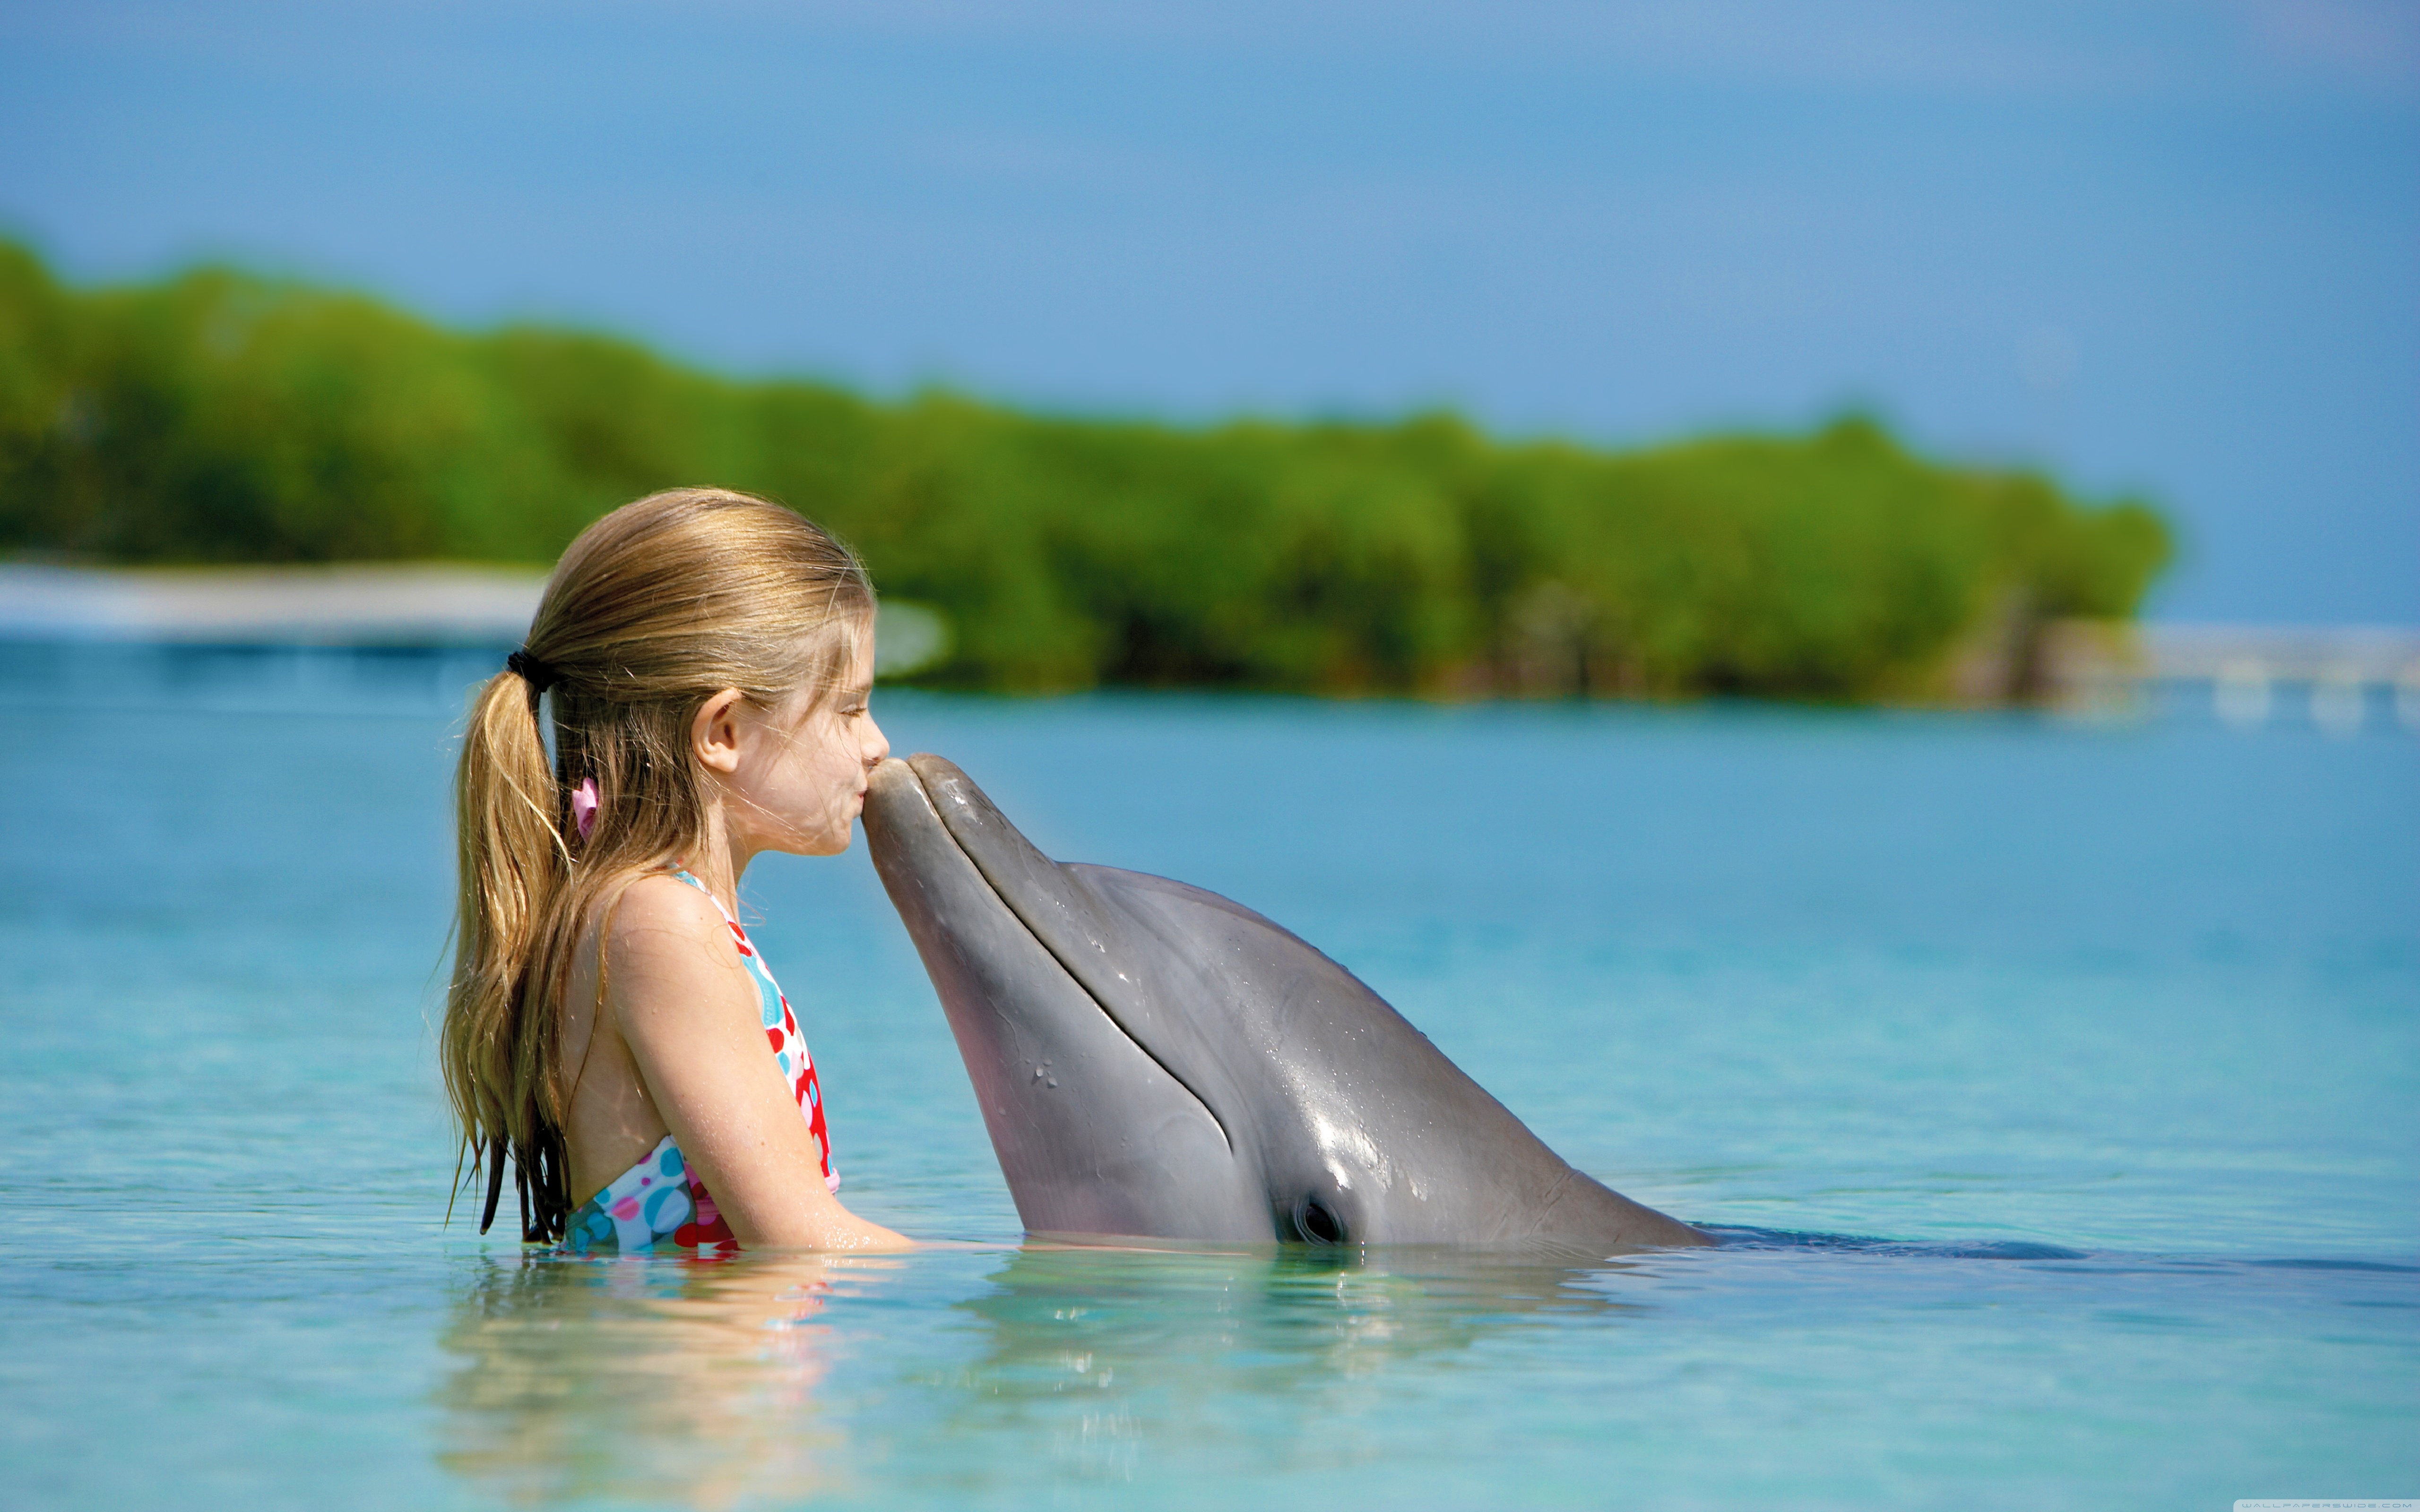 عکس دلفین بامزه رایگان مناسب برای چاپ و طراحی